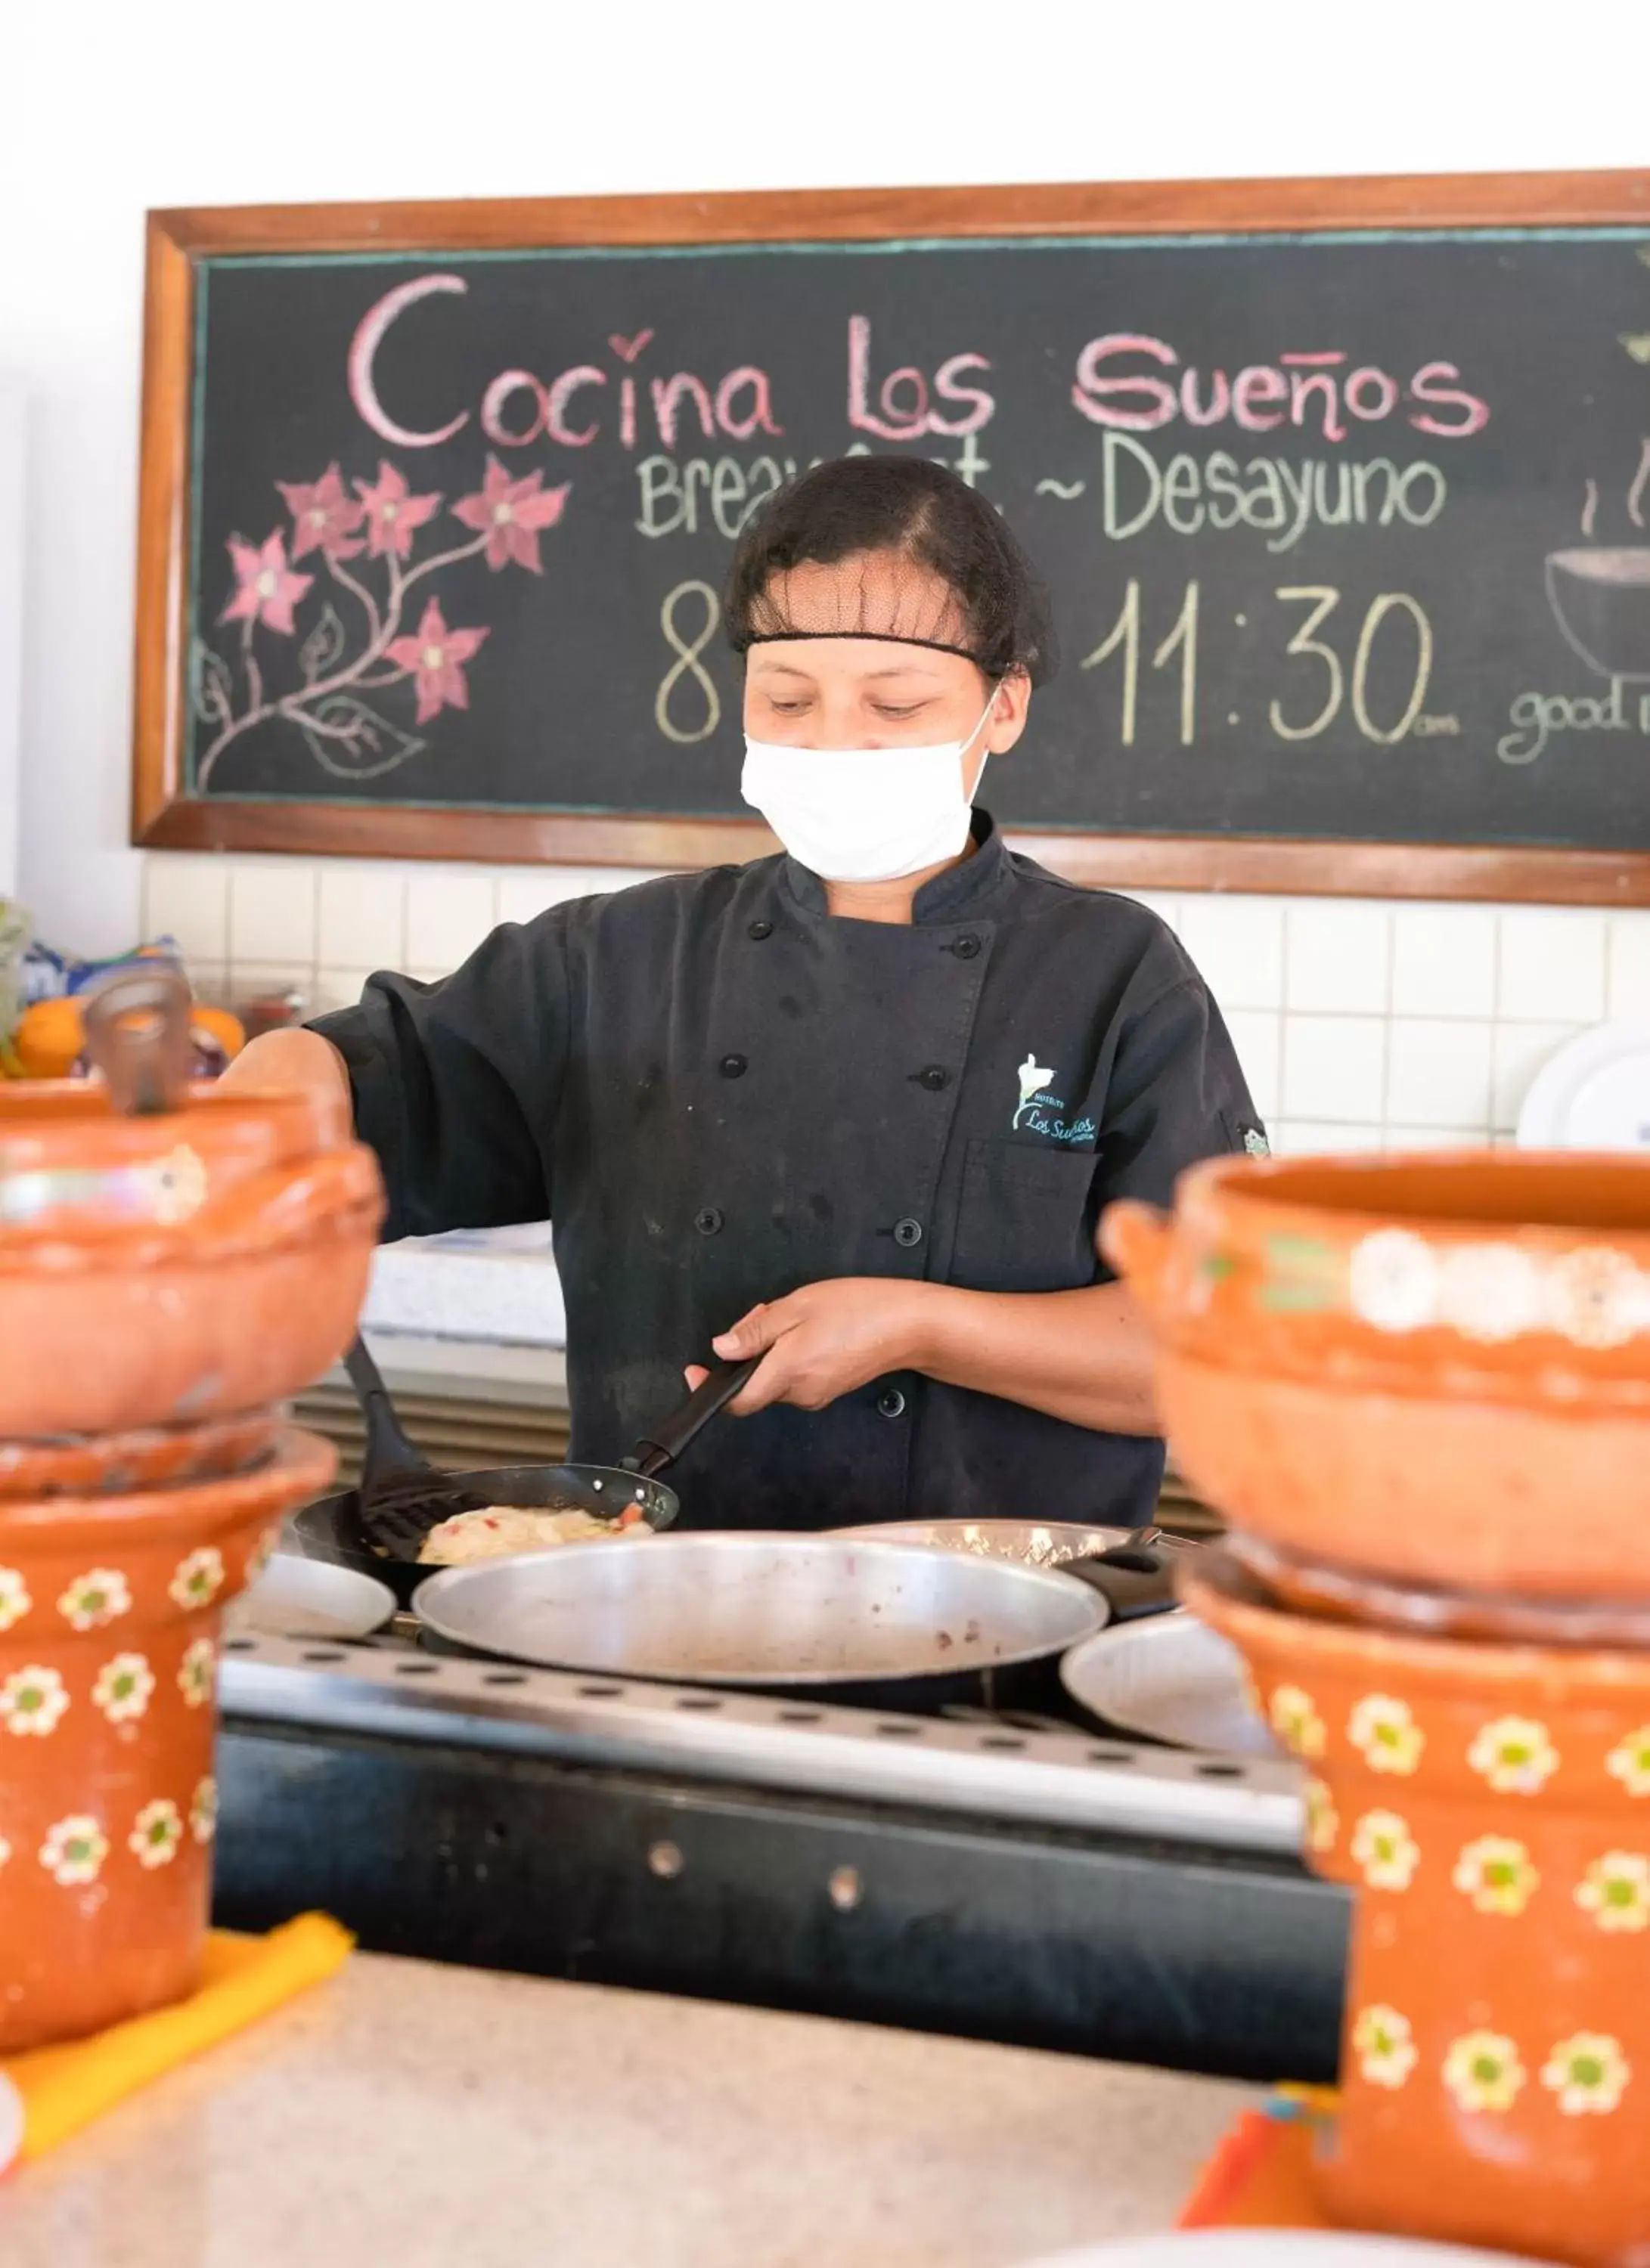 Restaurant/places to eat in Hotelito Los Sueños